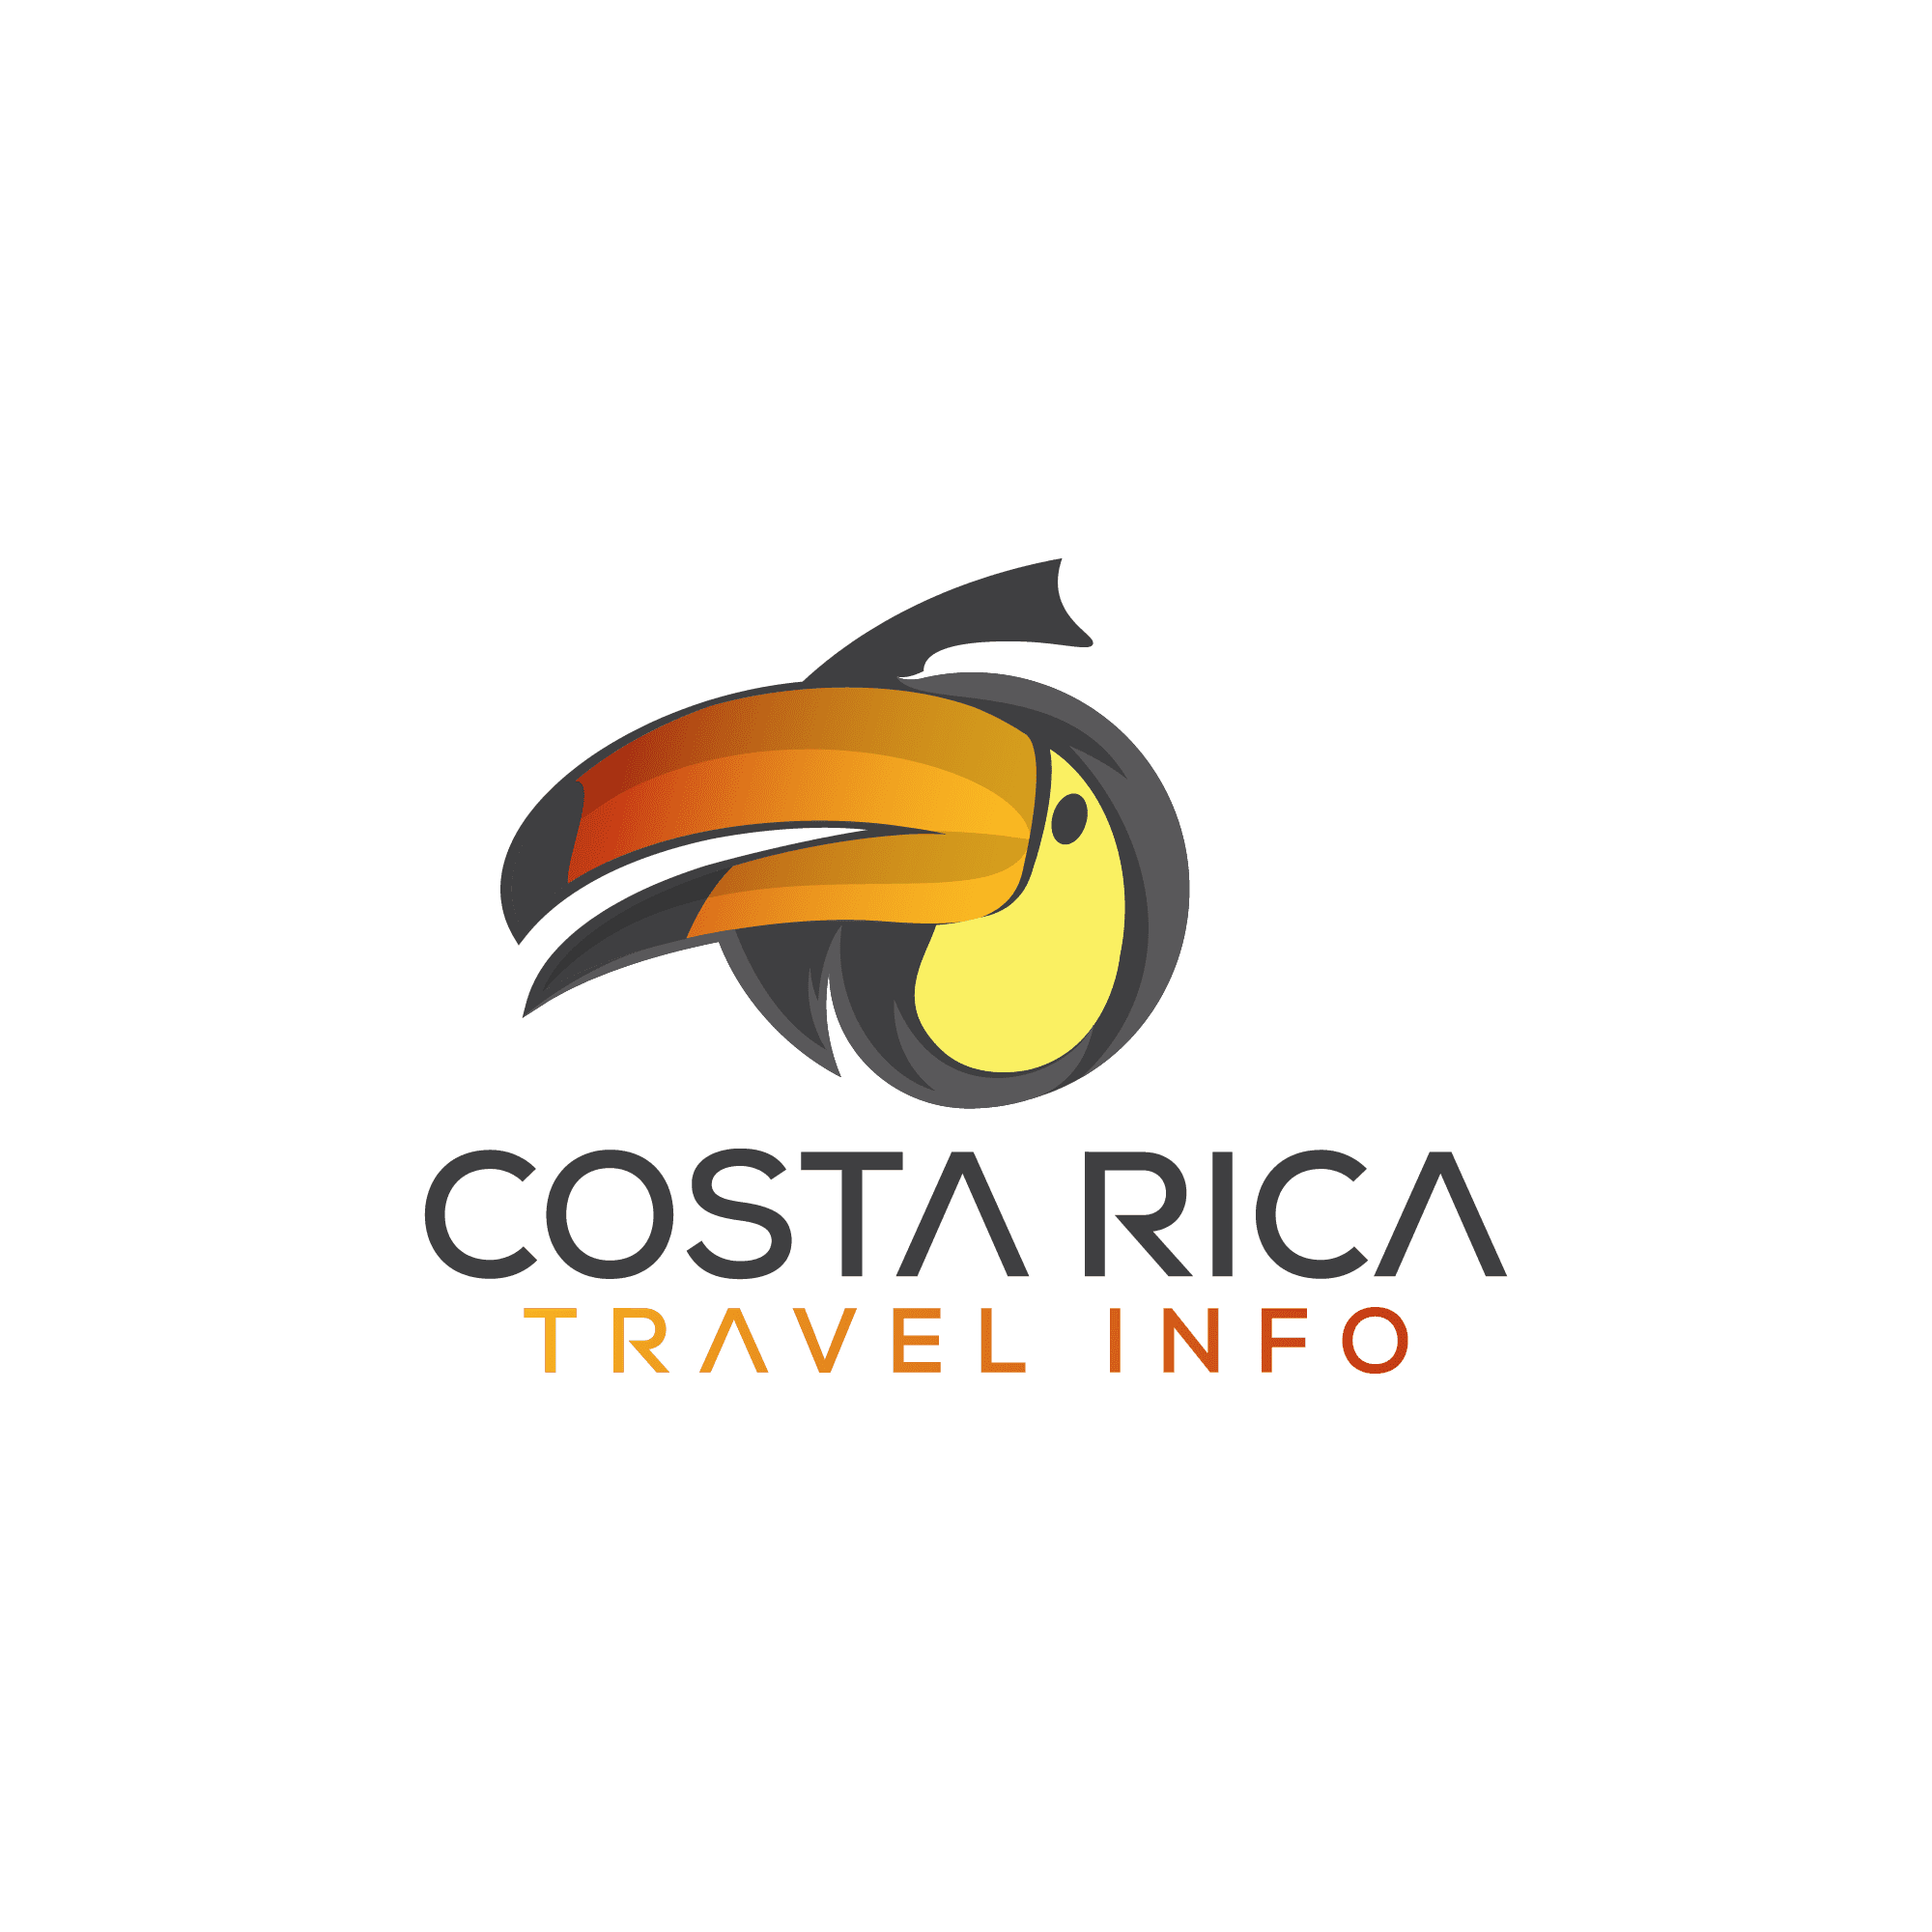 Build A Trip Costa Rica Travel Info